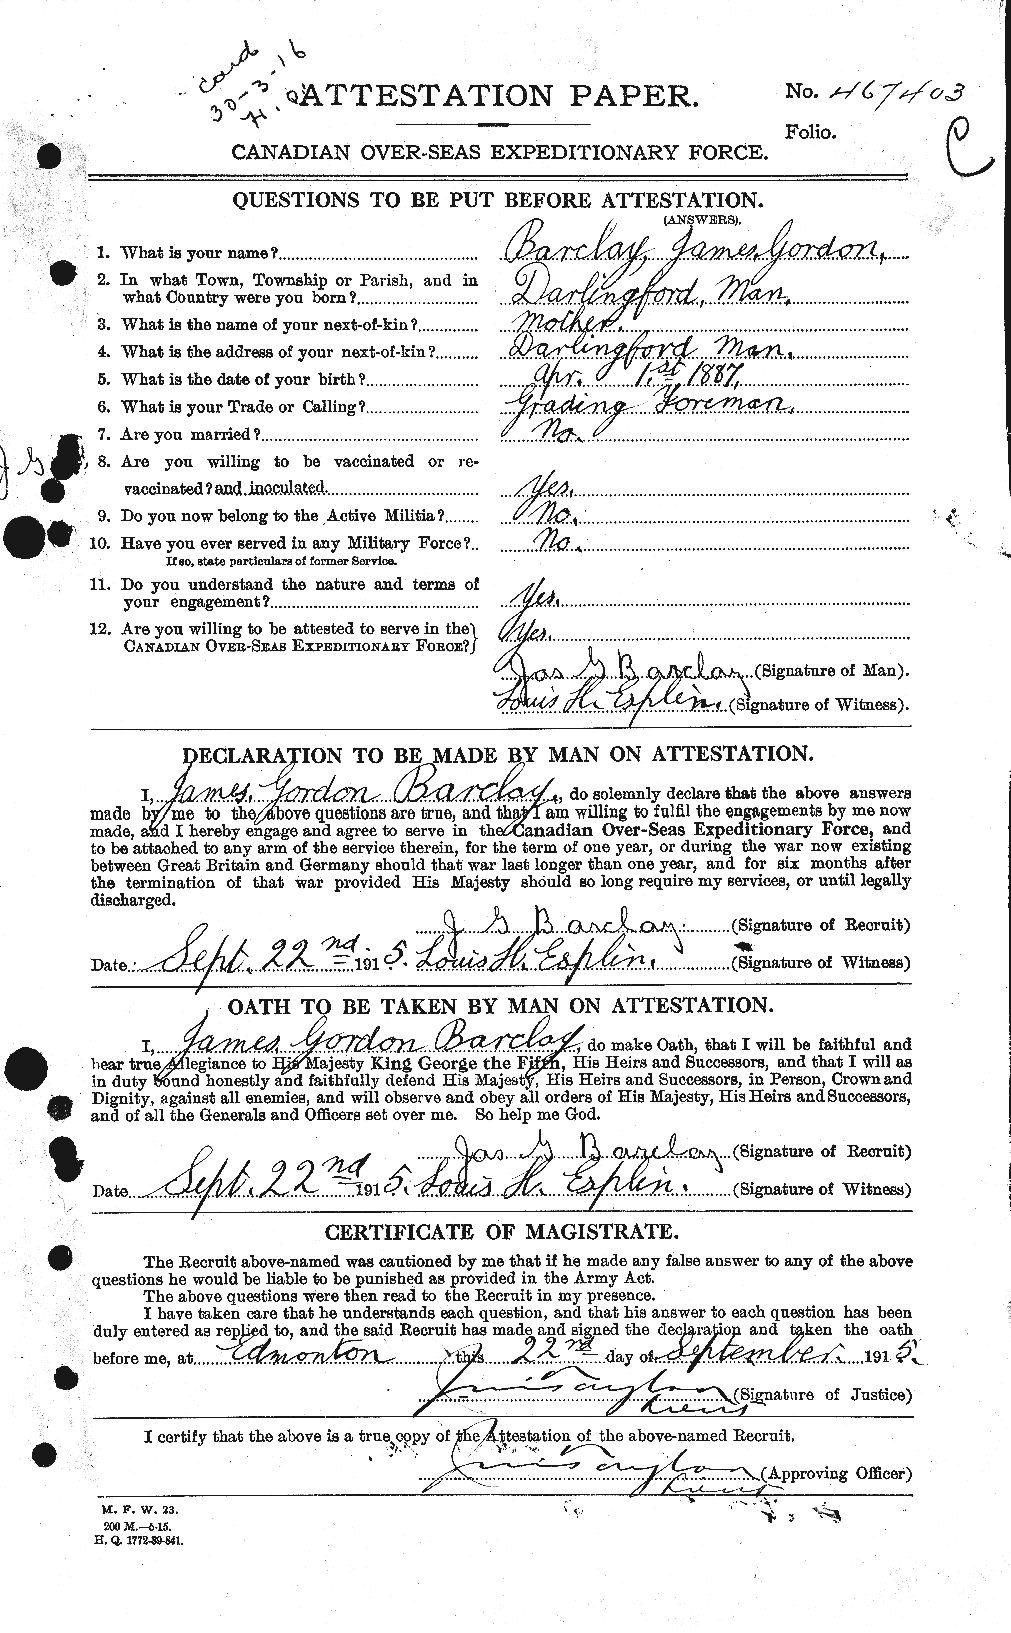 Dossiers du Personnel de la Première Guerre mondiale - CEC 220904a